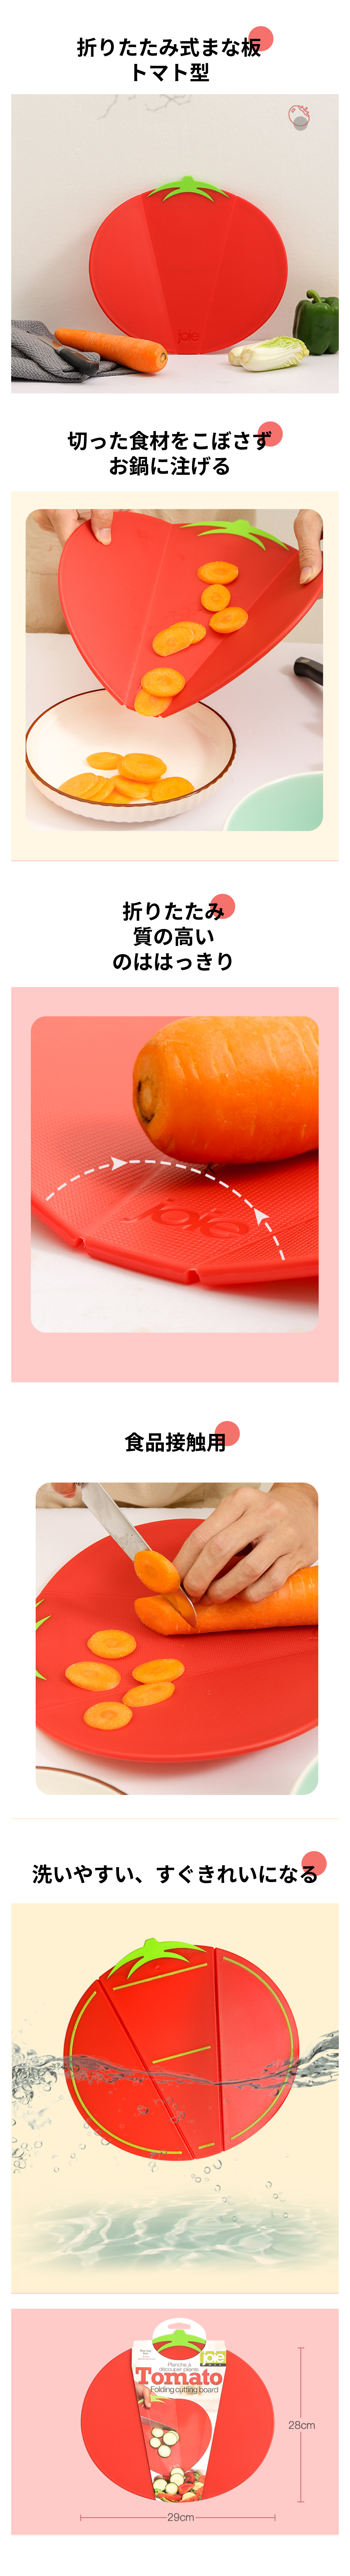 折りたたみ式まな板 トマト型.png